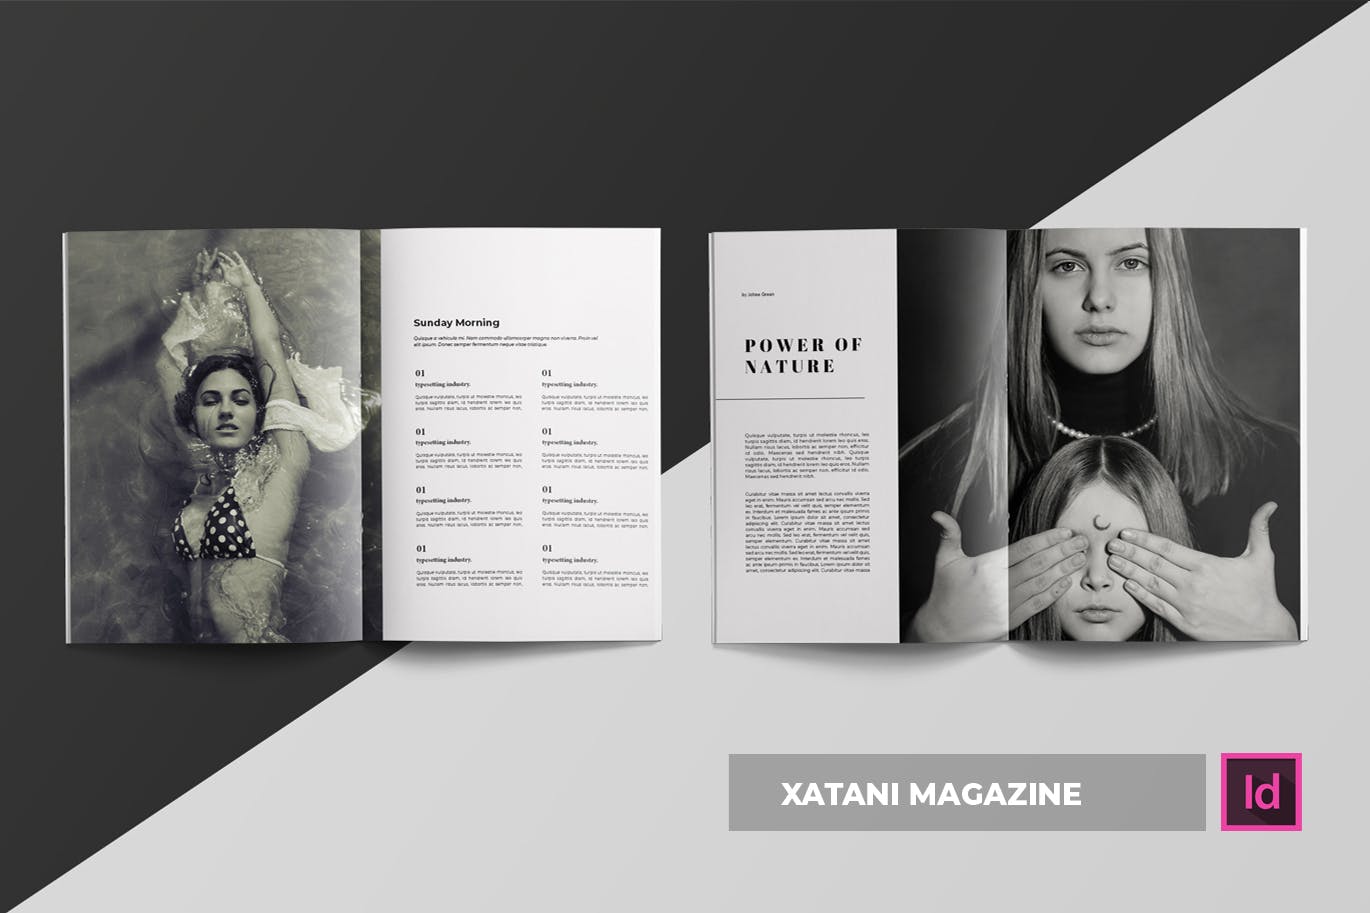 时尚生活方式个性化16图库精选杂志设计INDD模板 Xatani | Magazine Template插图(2)